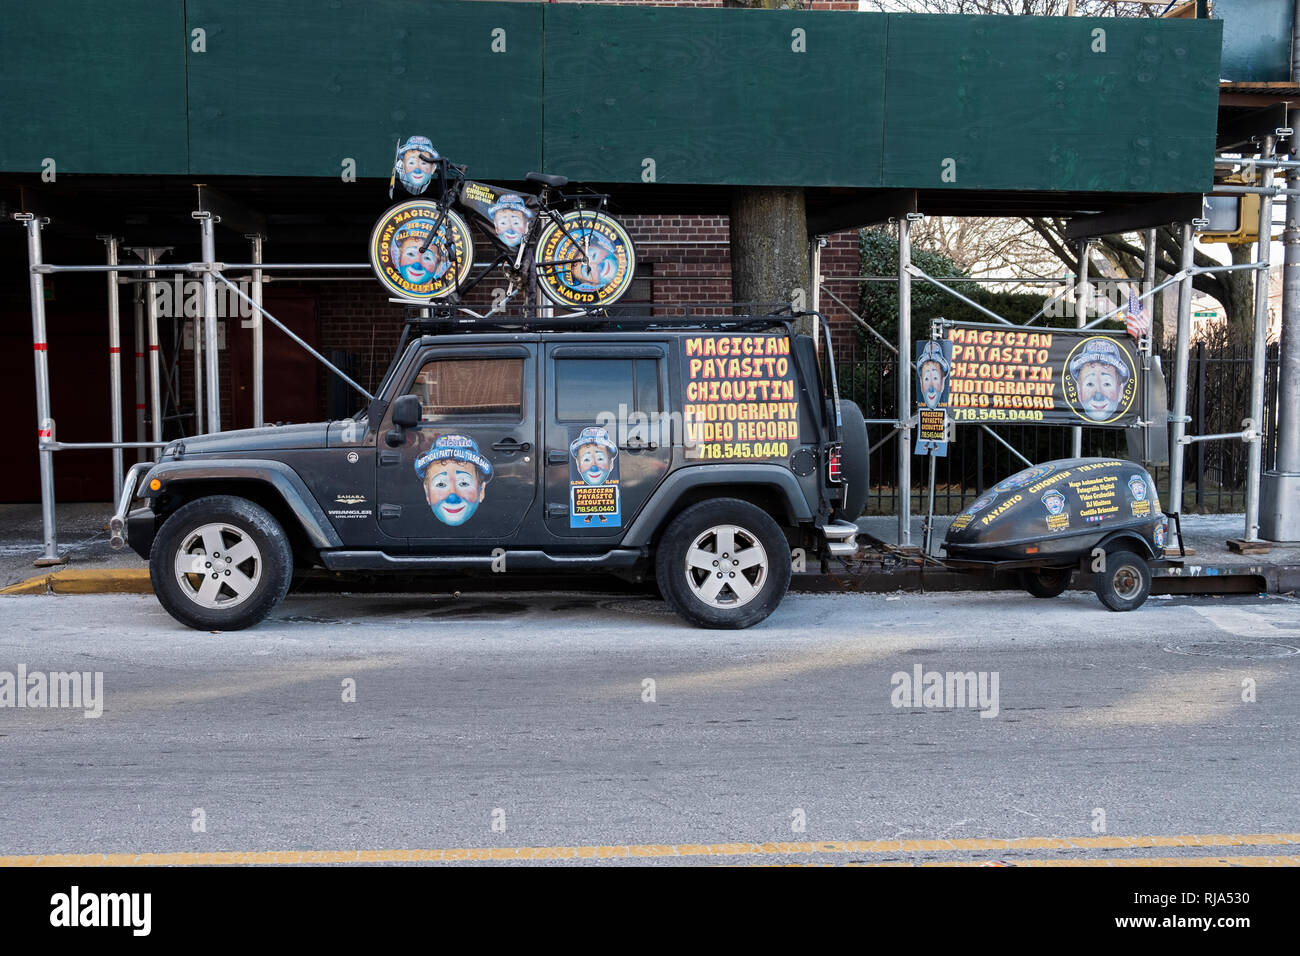 Ungewöhnliche Werbung für Payasito Chiquitin, einer Lateinamerikanischen Clown, Zauberer und Entertainer. Auf der Kreuzung Boulevard in der Corona, Queens, New York. Stockfoto